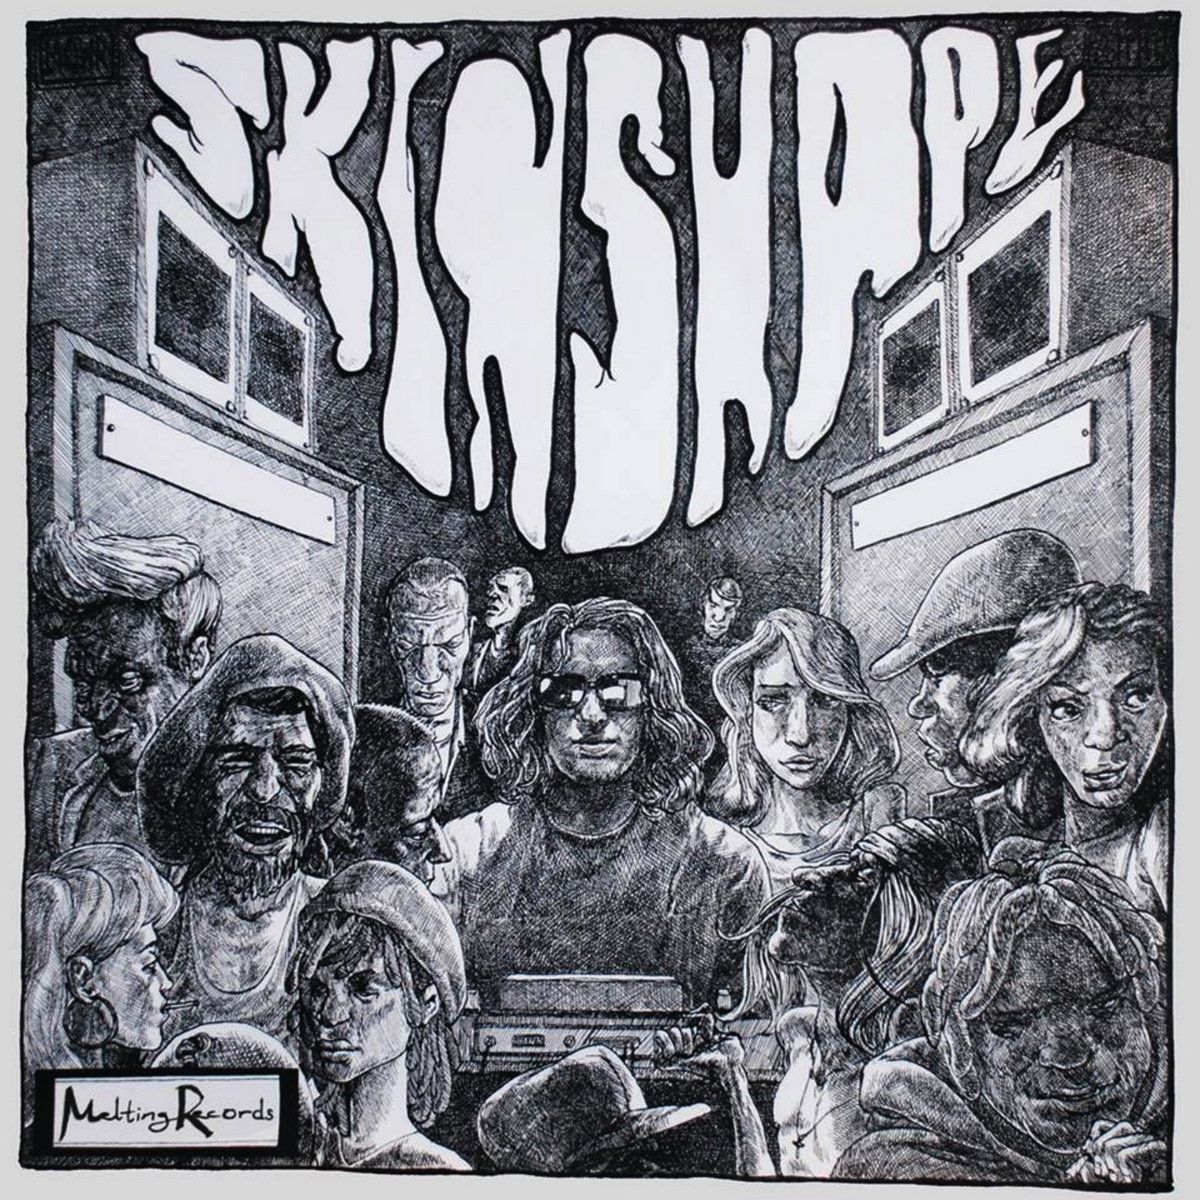 Imagem do álbum Skinshape do(a) artista Skinshape